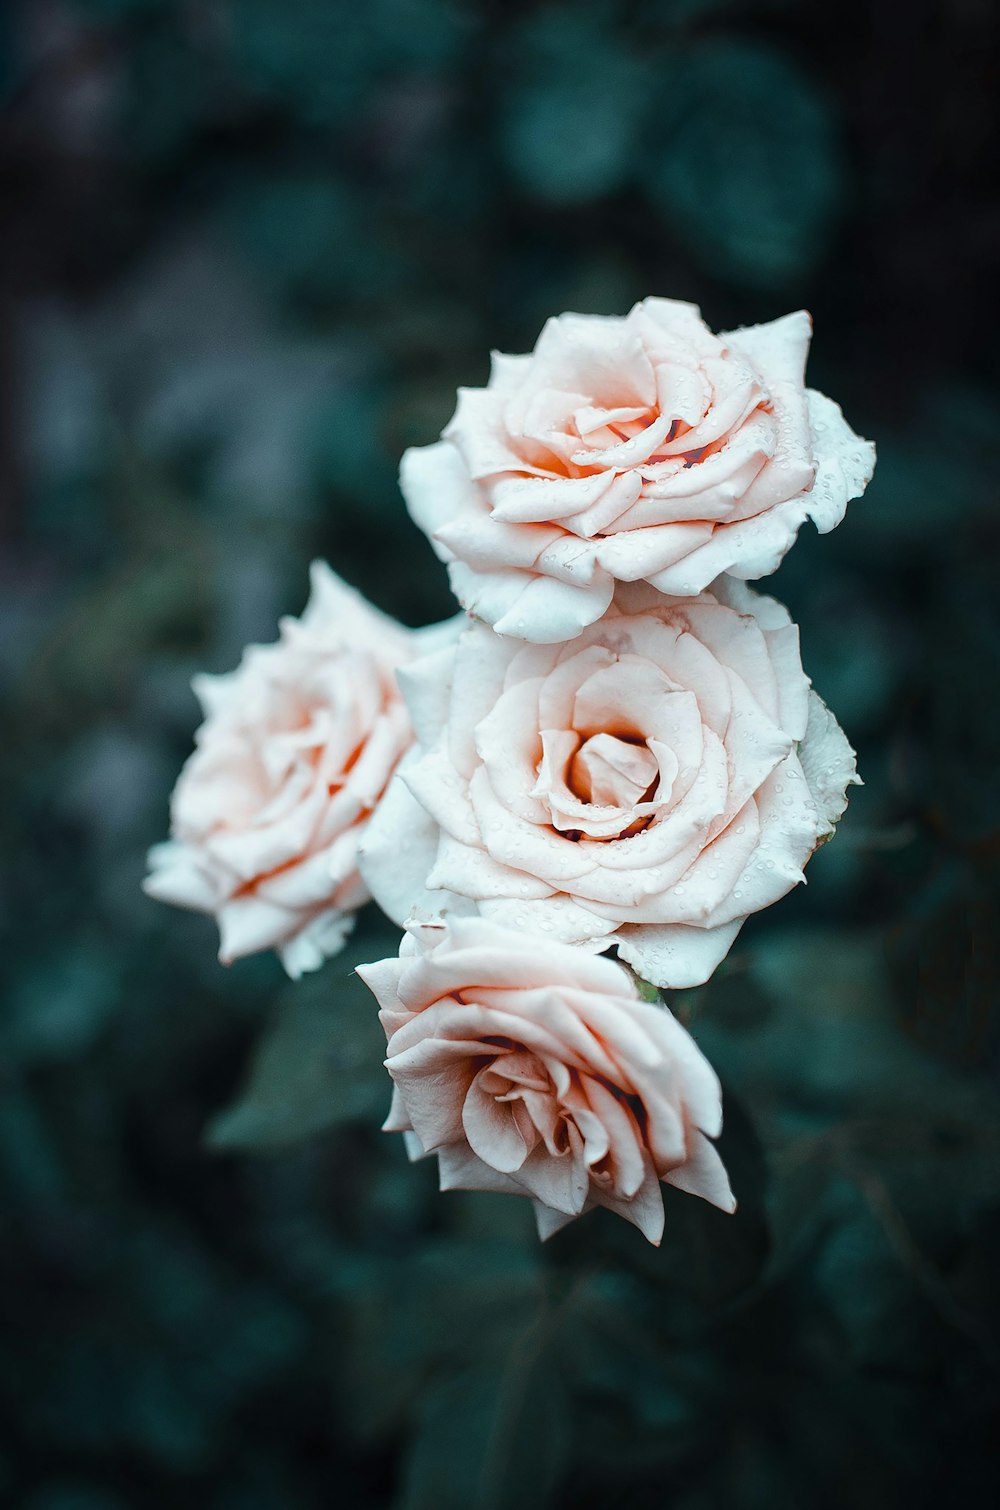 rosa branca em flor durante o dia